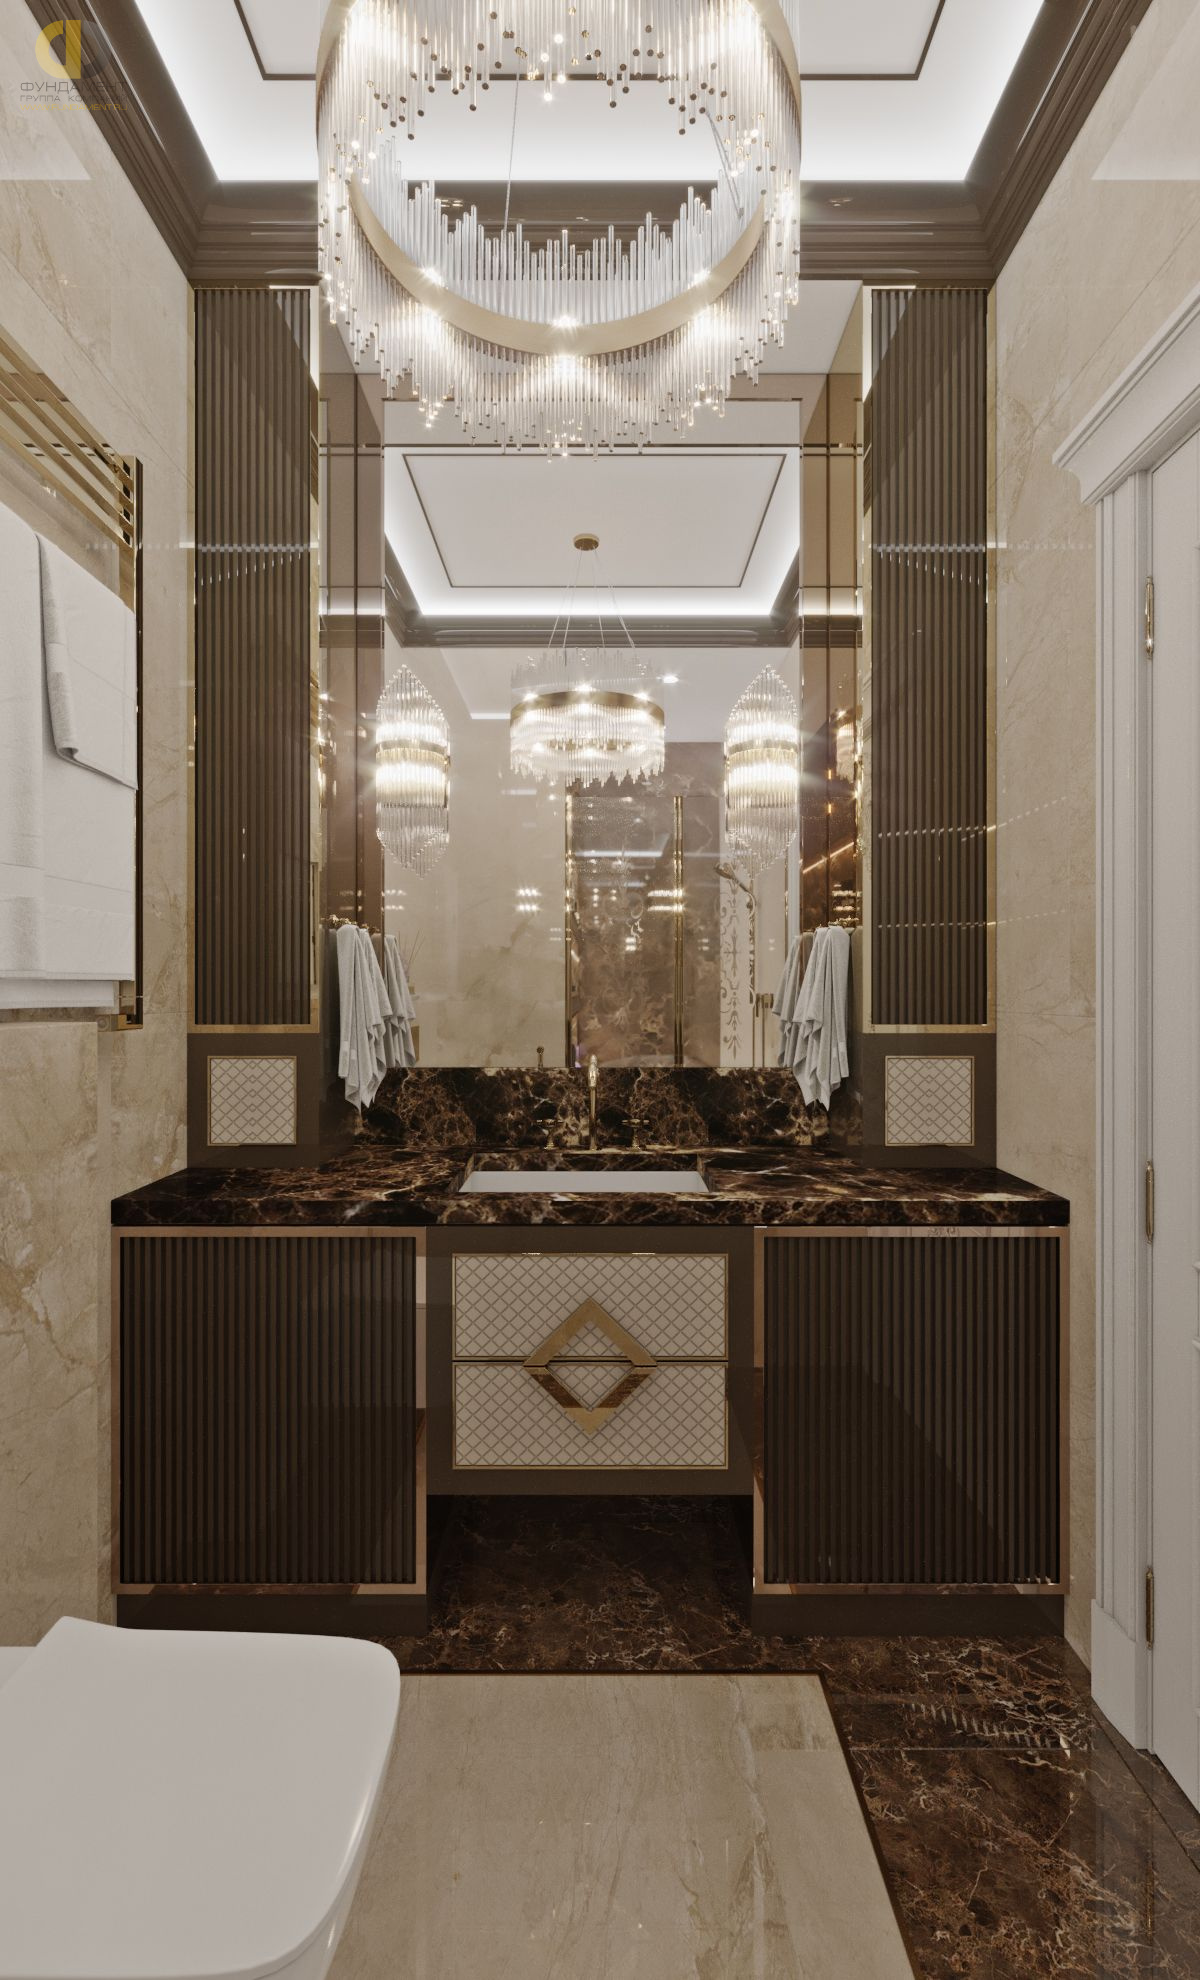 Ванная в стиле дизайна классицизм по адресу г. Москва, Хорошевское шоссе, дом 25А, стр. 1, 2021 года